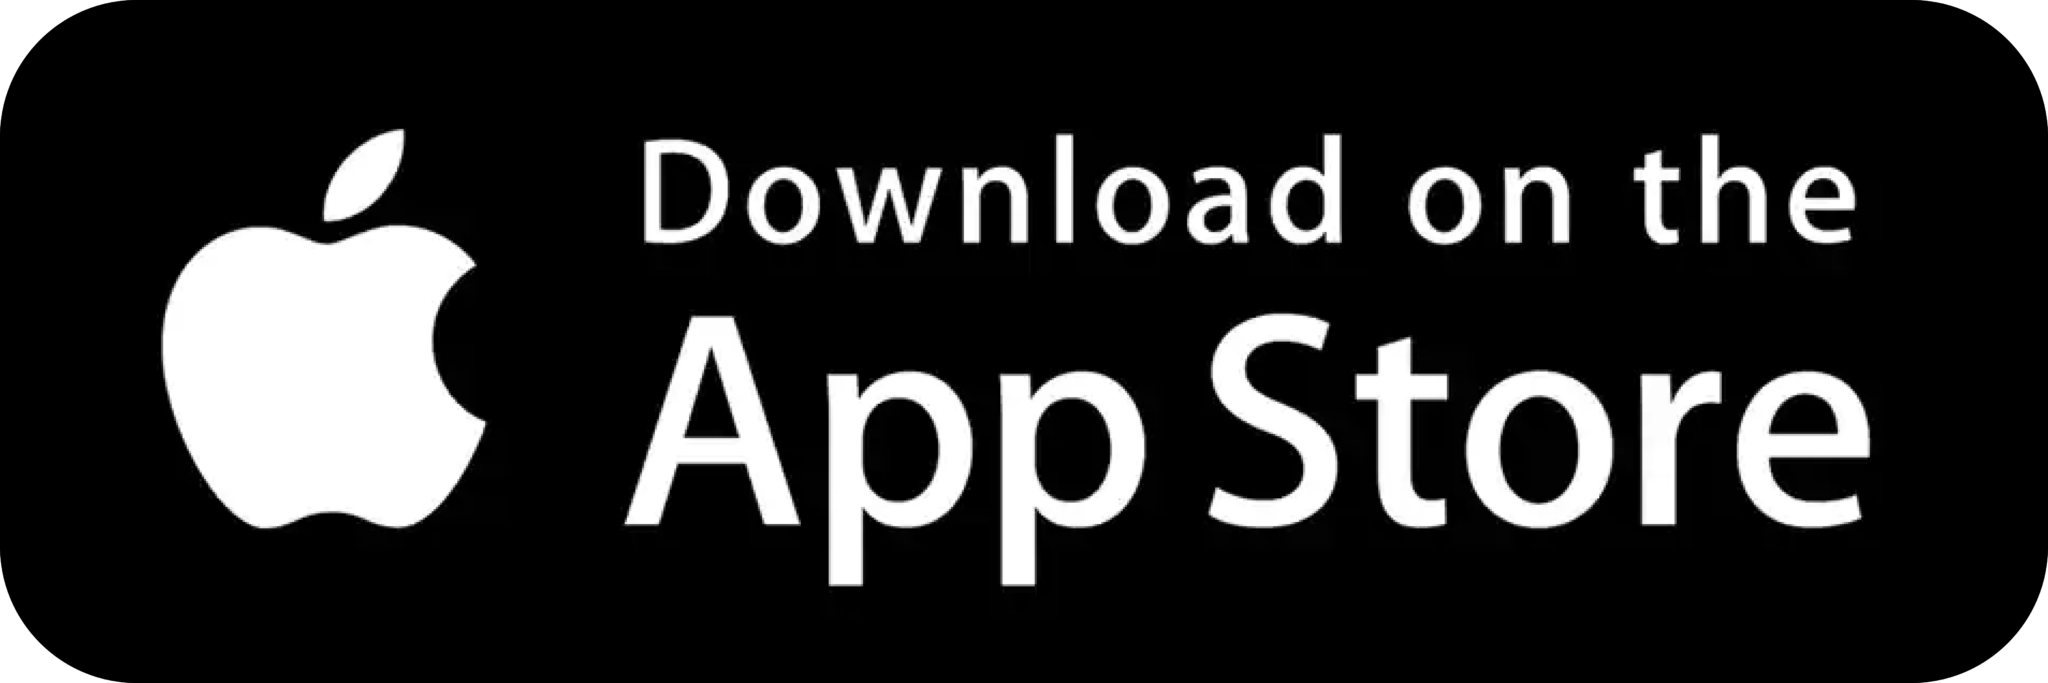 download-app-store-2048x683